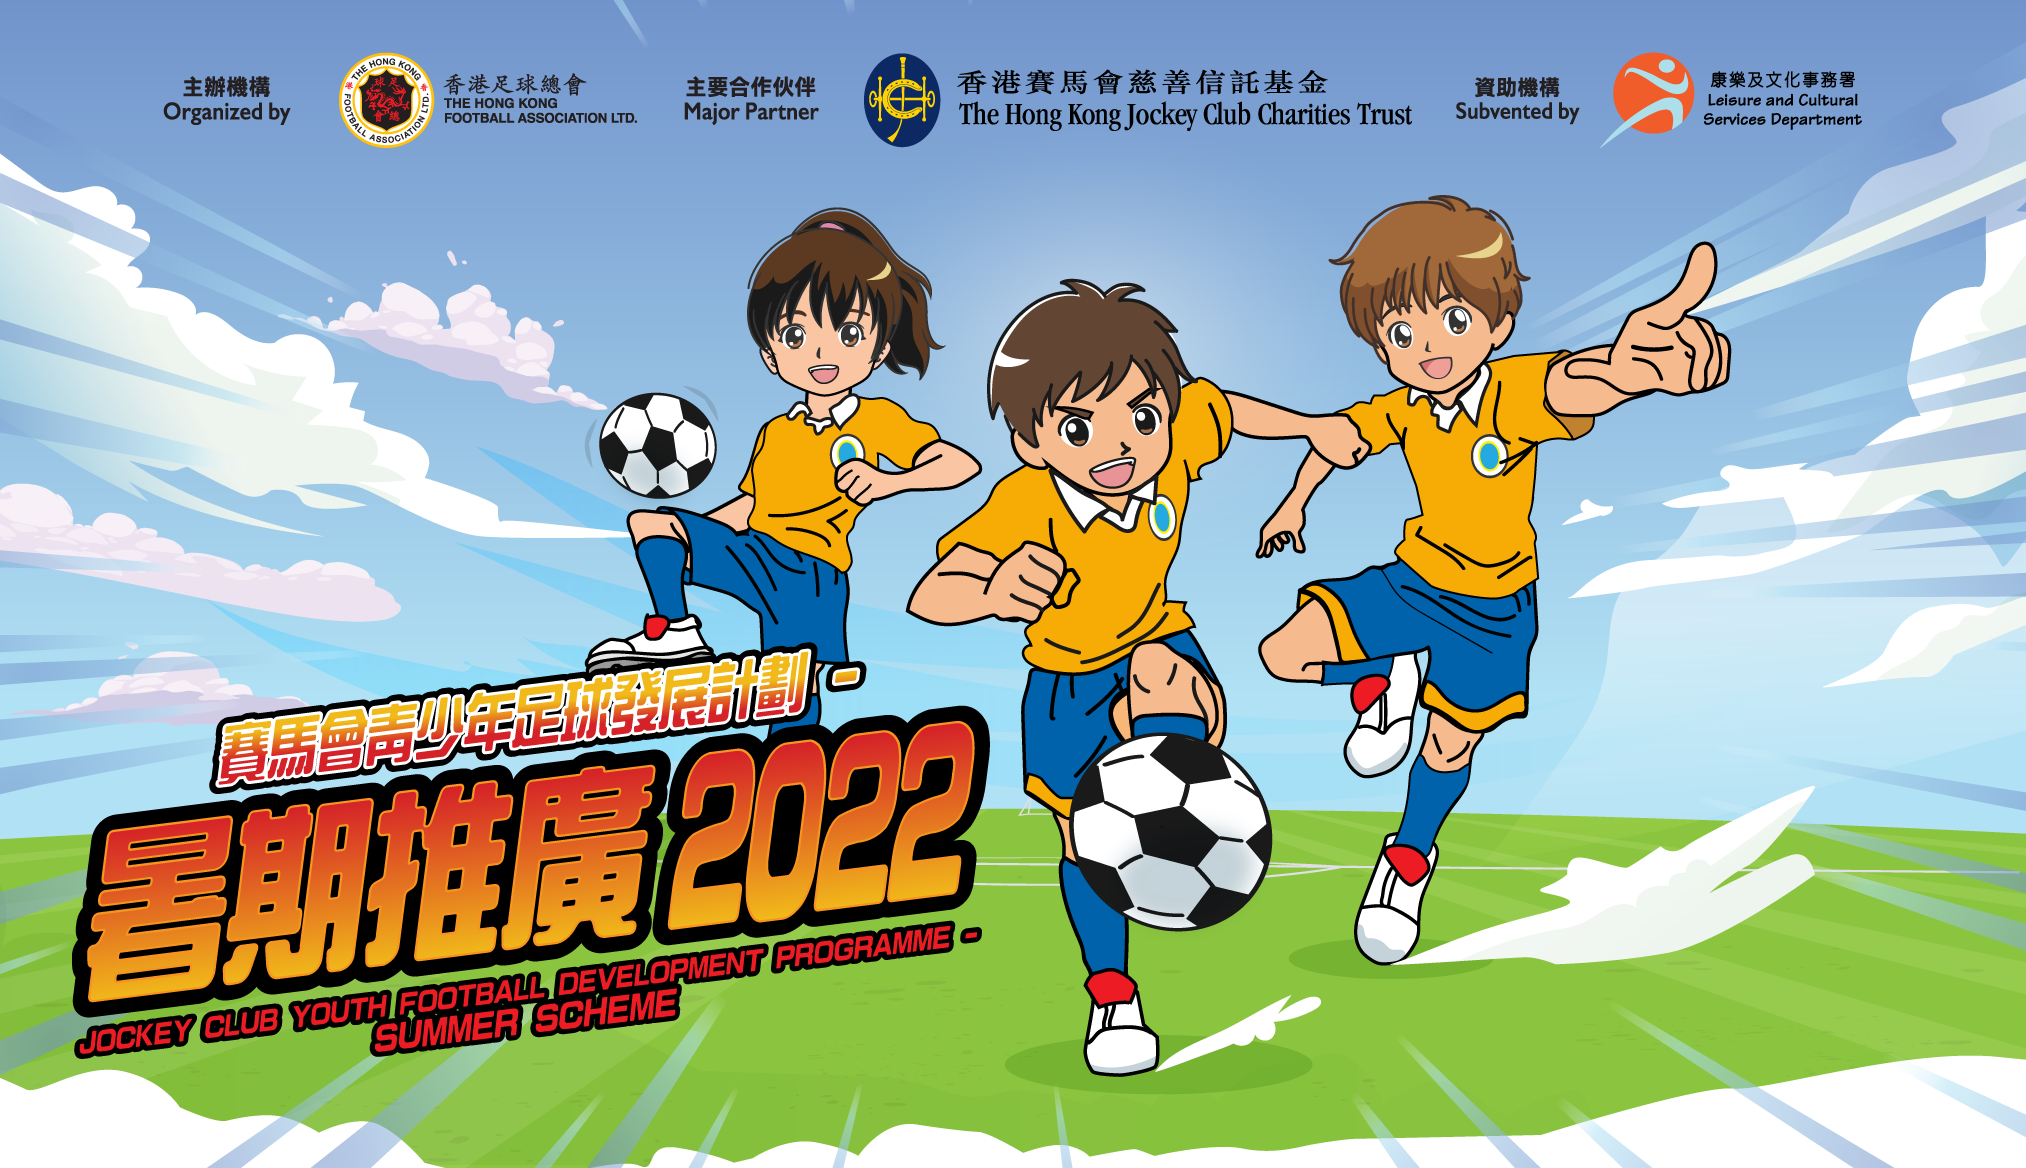 【活動資訊】「賽馬會青少年足球發展計劃－暑期推廣2022」